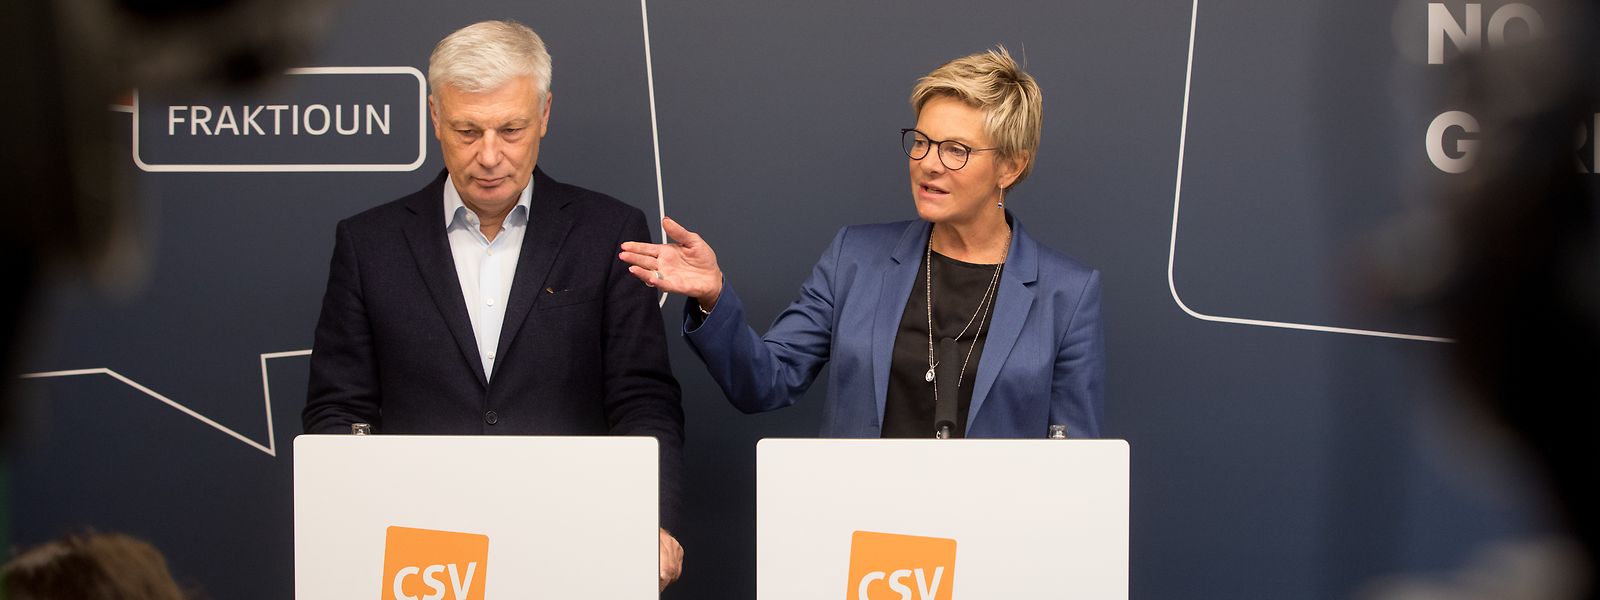 Während Claude Wiseler die Parteiführung übernehmen will, wird Martine Hansen weiter an der Spitze der Fraktion stehen, allerdings unterstützt von Gilles Roth.